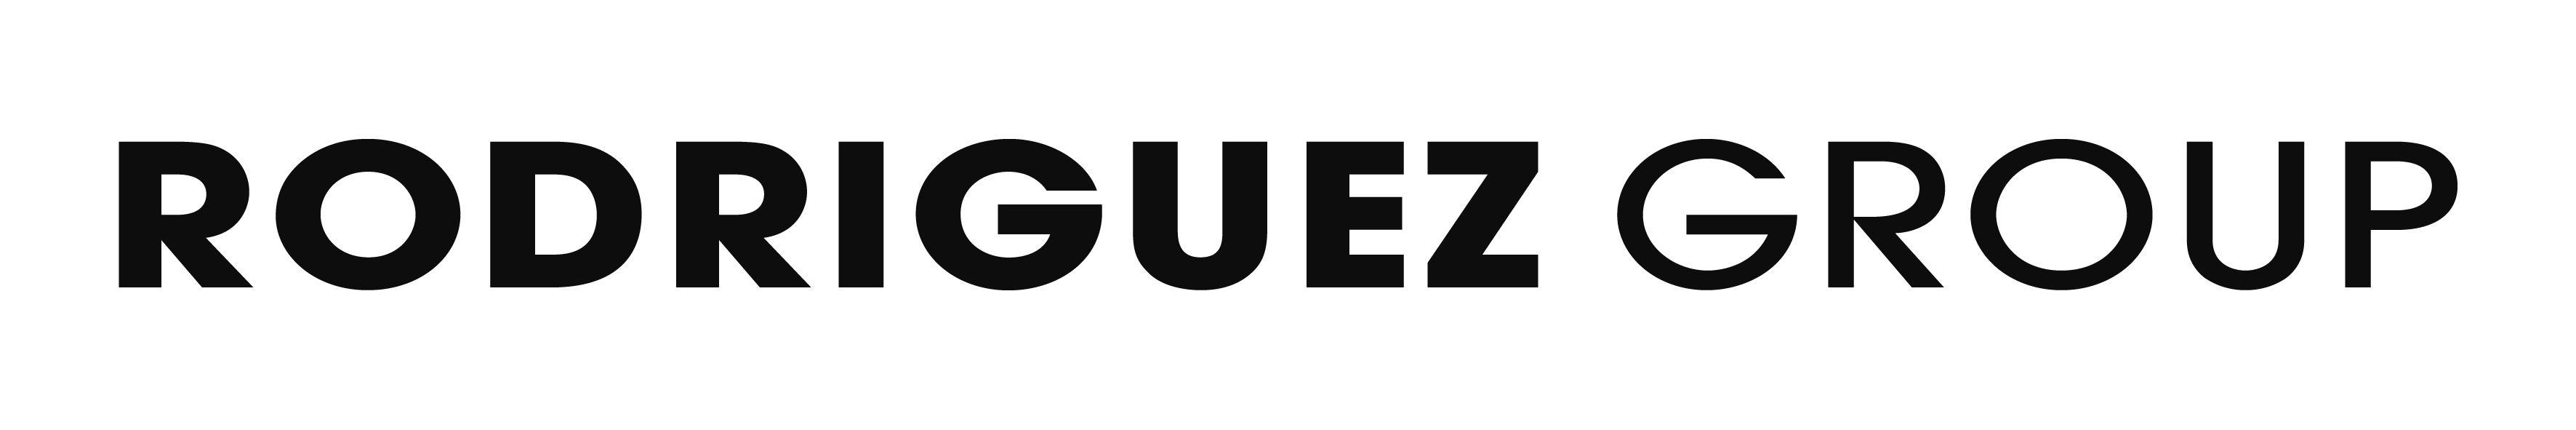 Rodriguez Logo - Rodriguez Group Announces World Premier of 46M Leopard Megayacht at ...